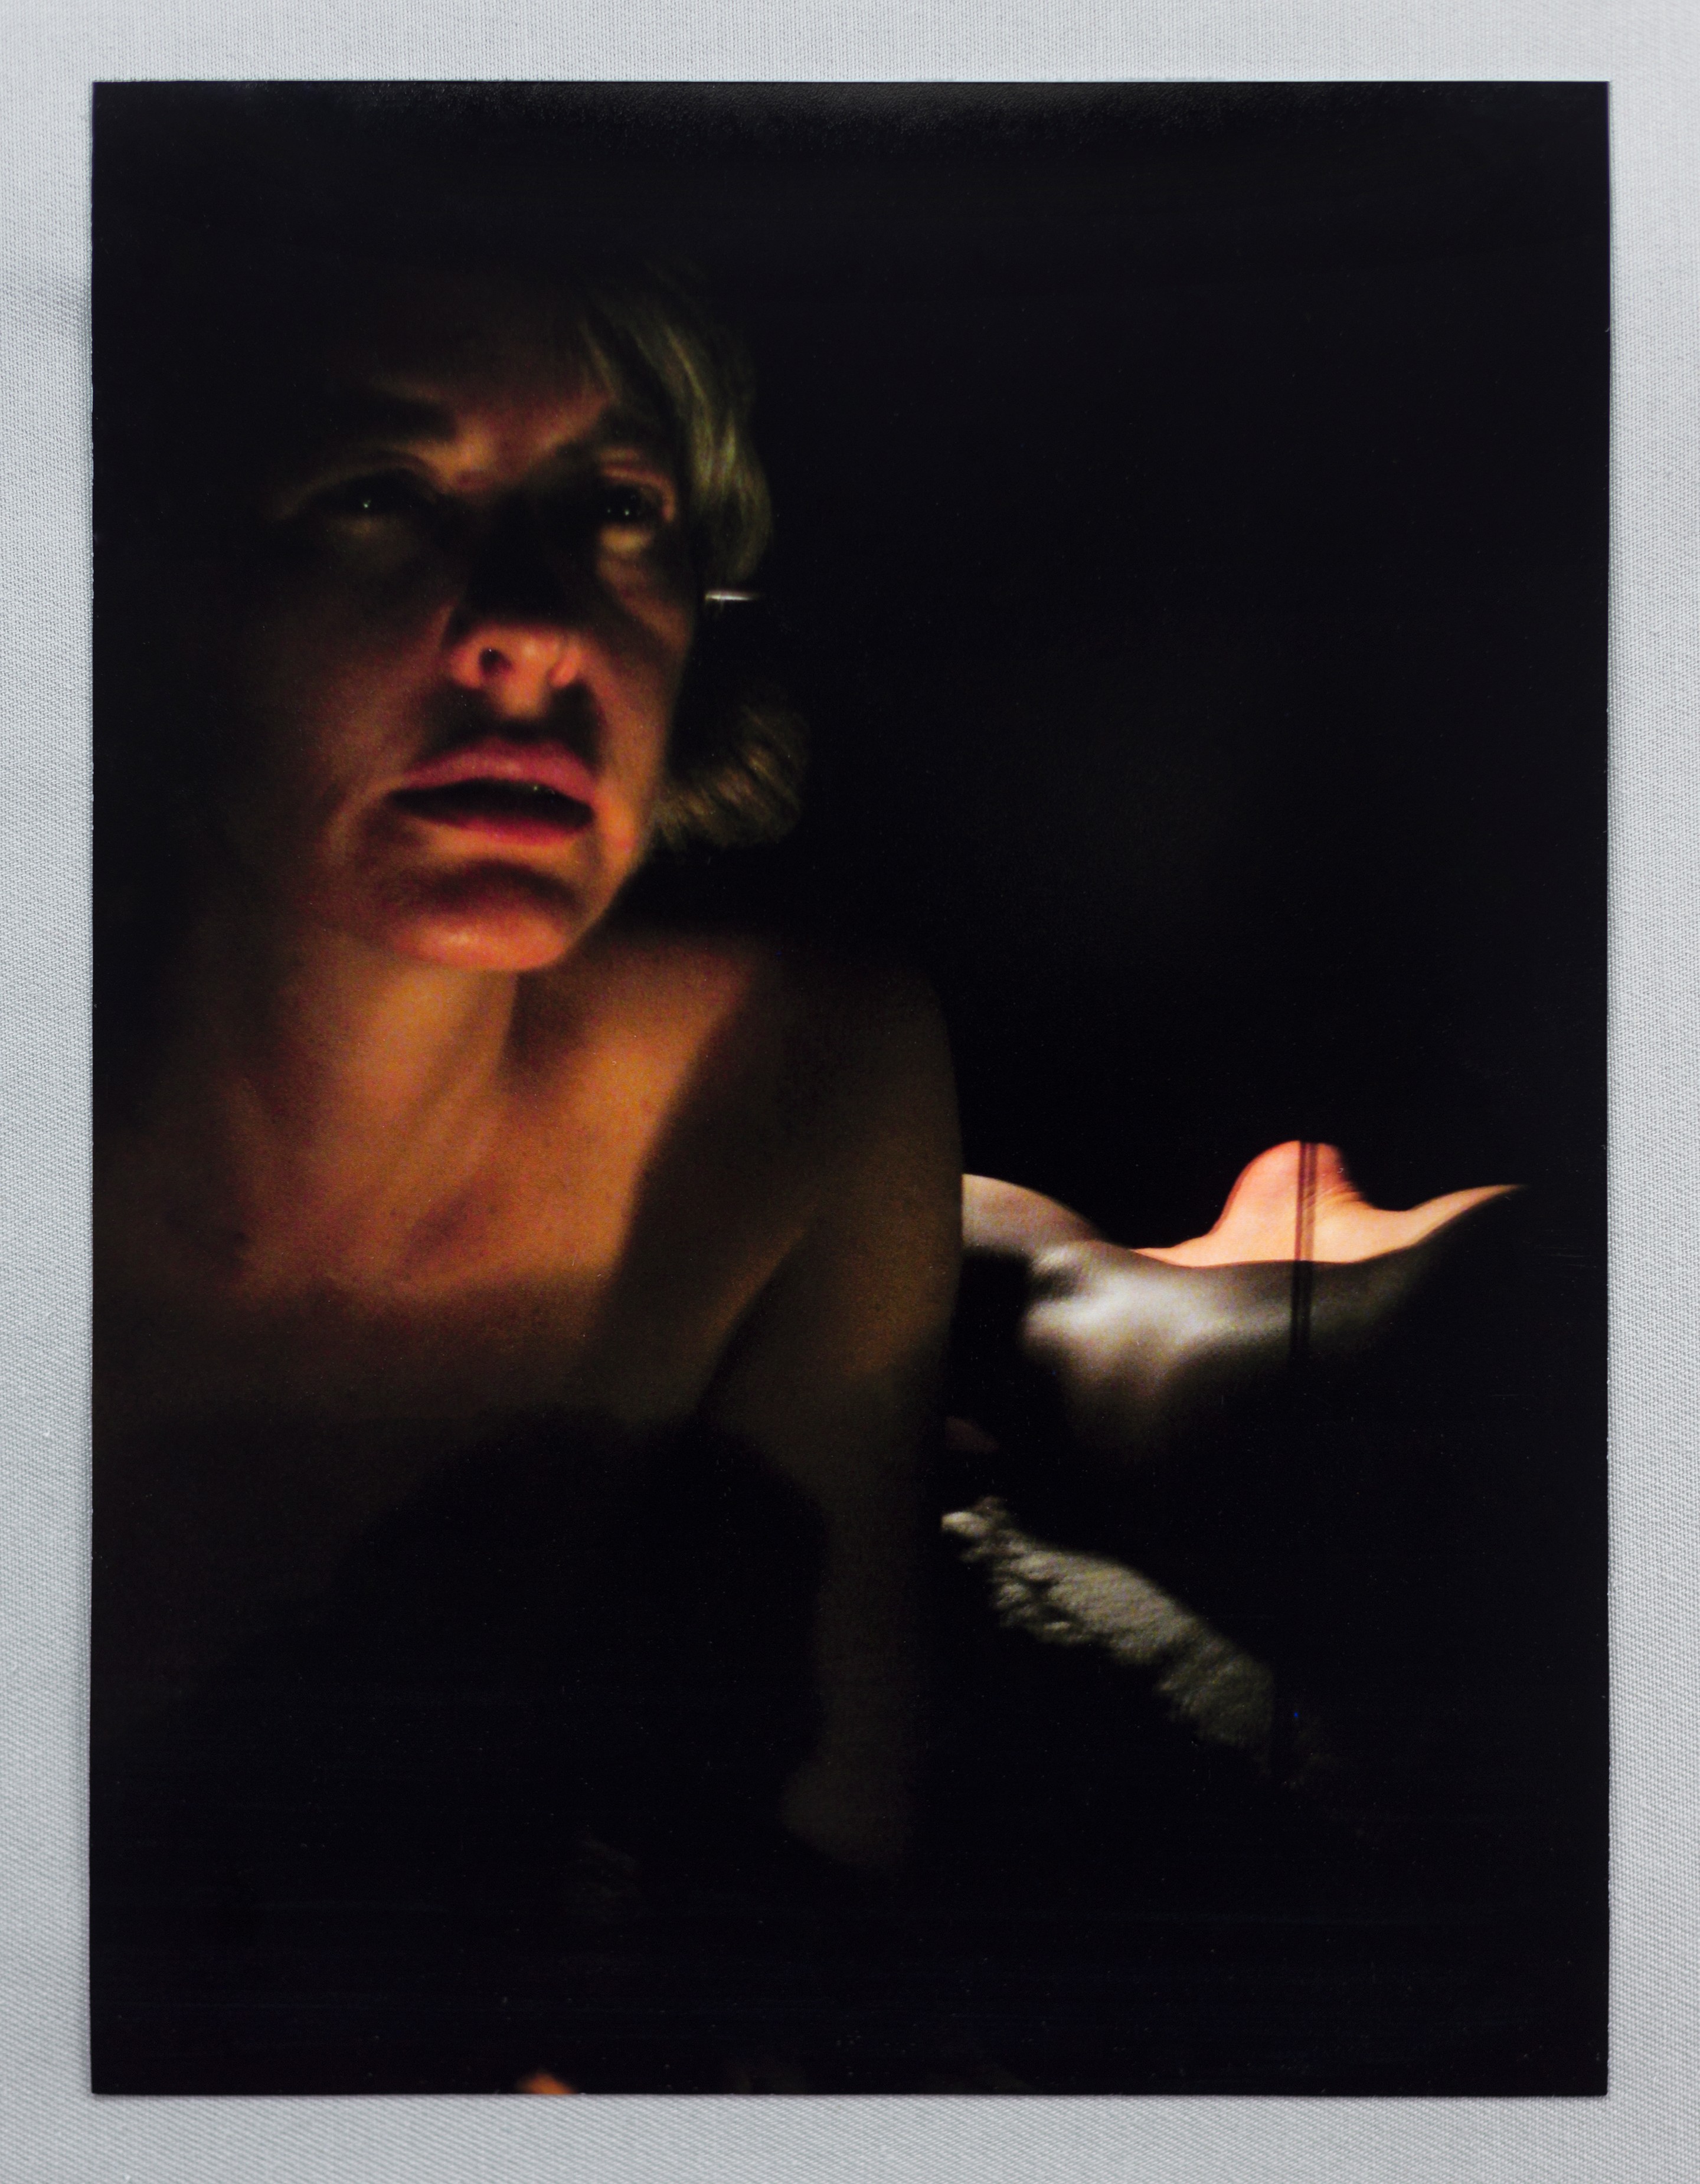 Monica Majoli - Primary Materials for Black Mirror (2009 - 2012). Archival pigment print. 10h x 7w inches.